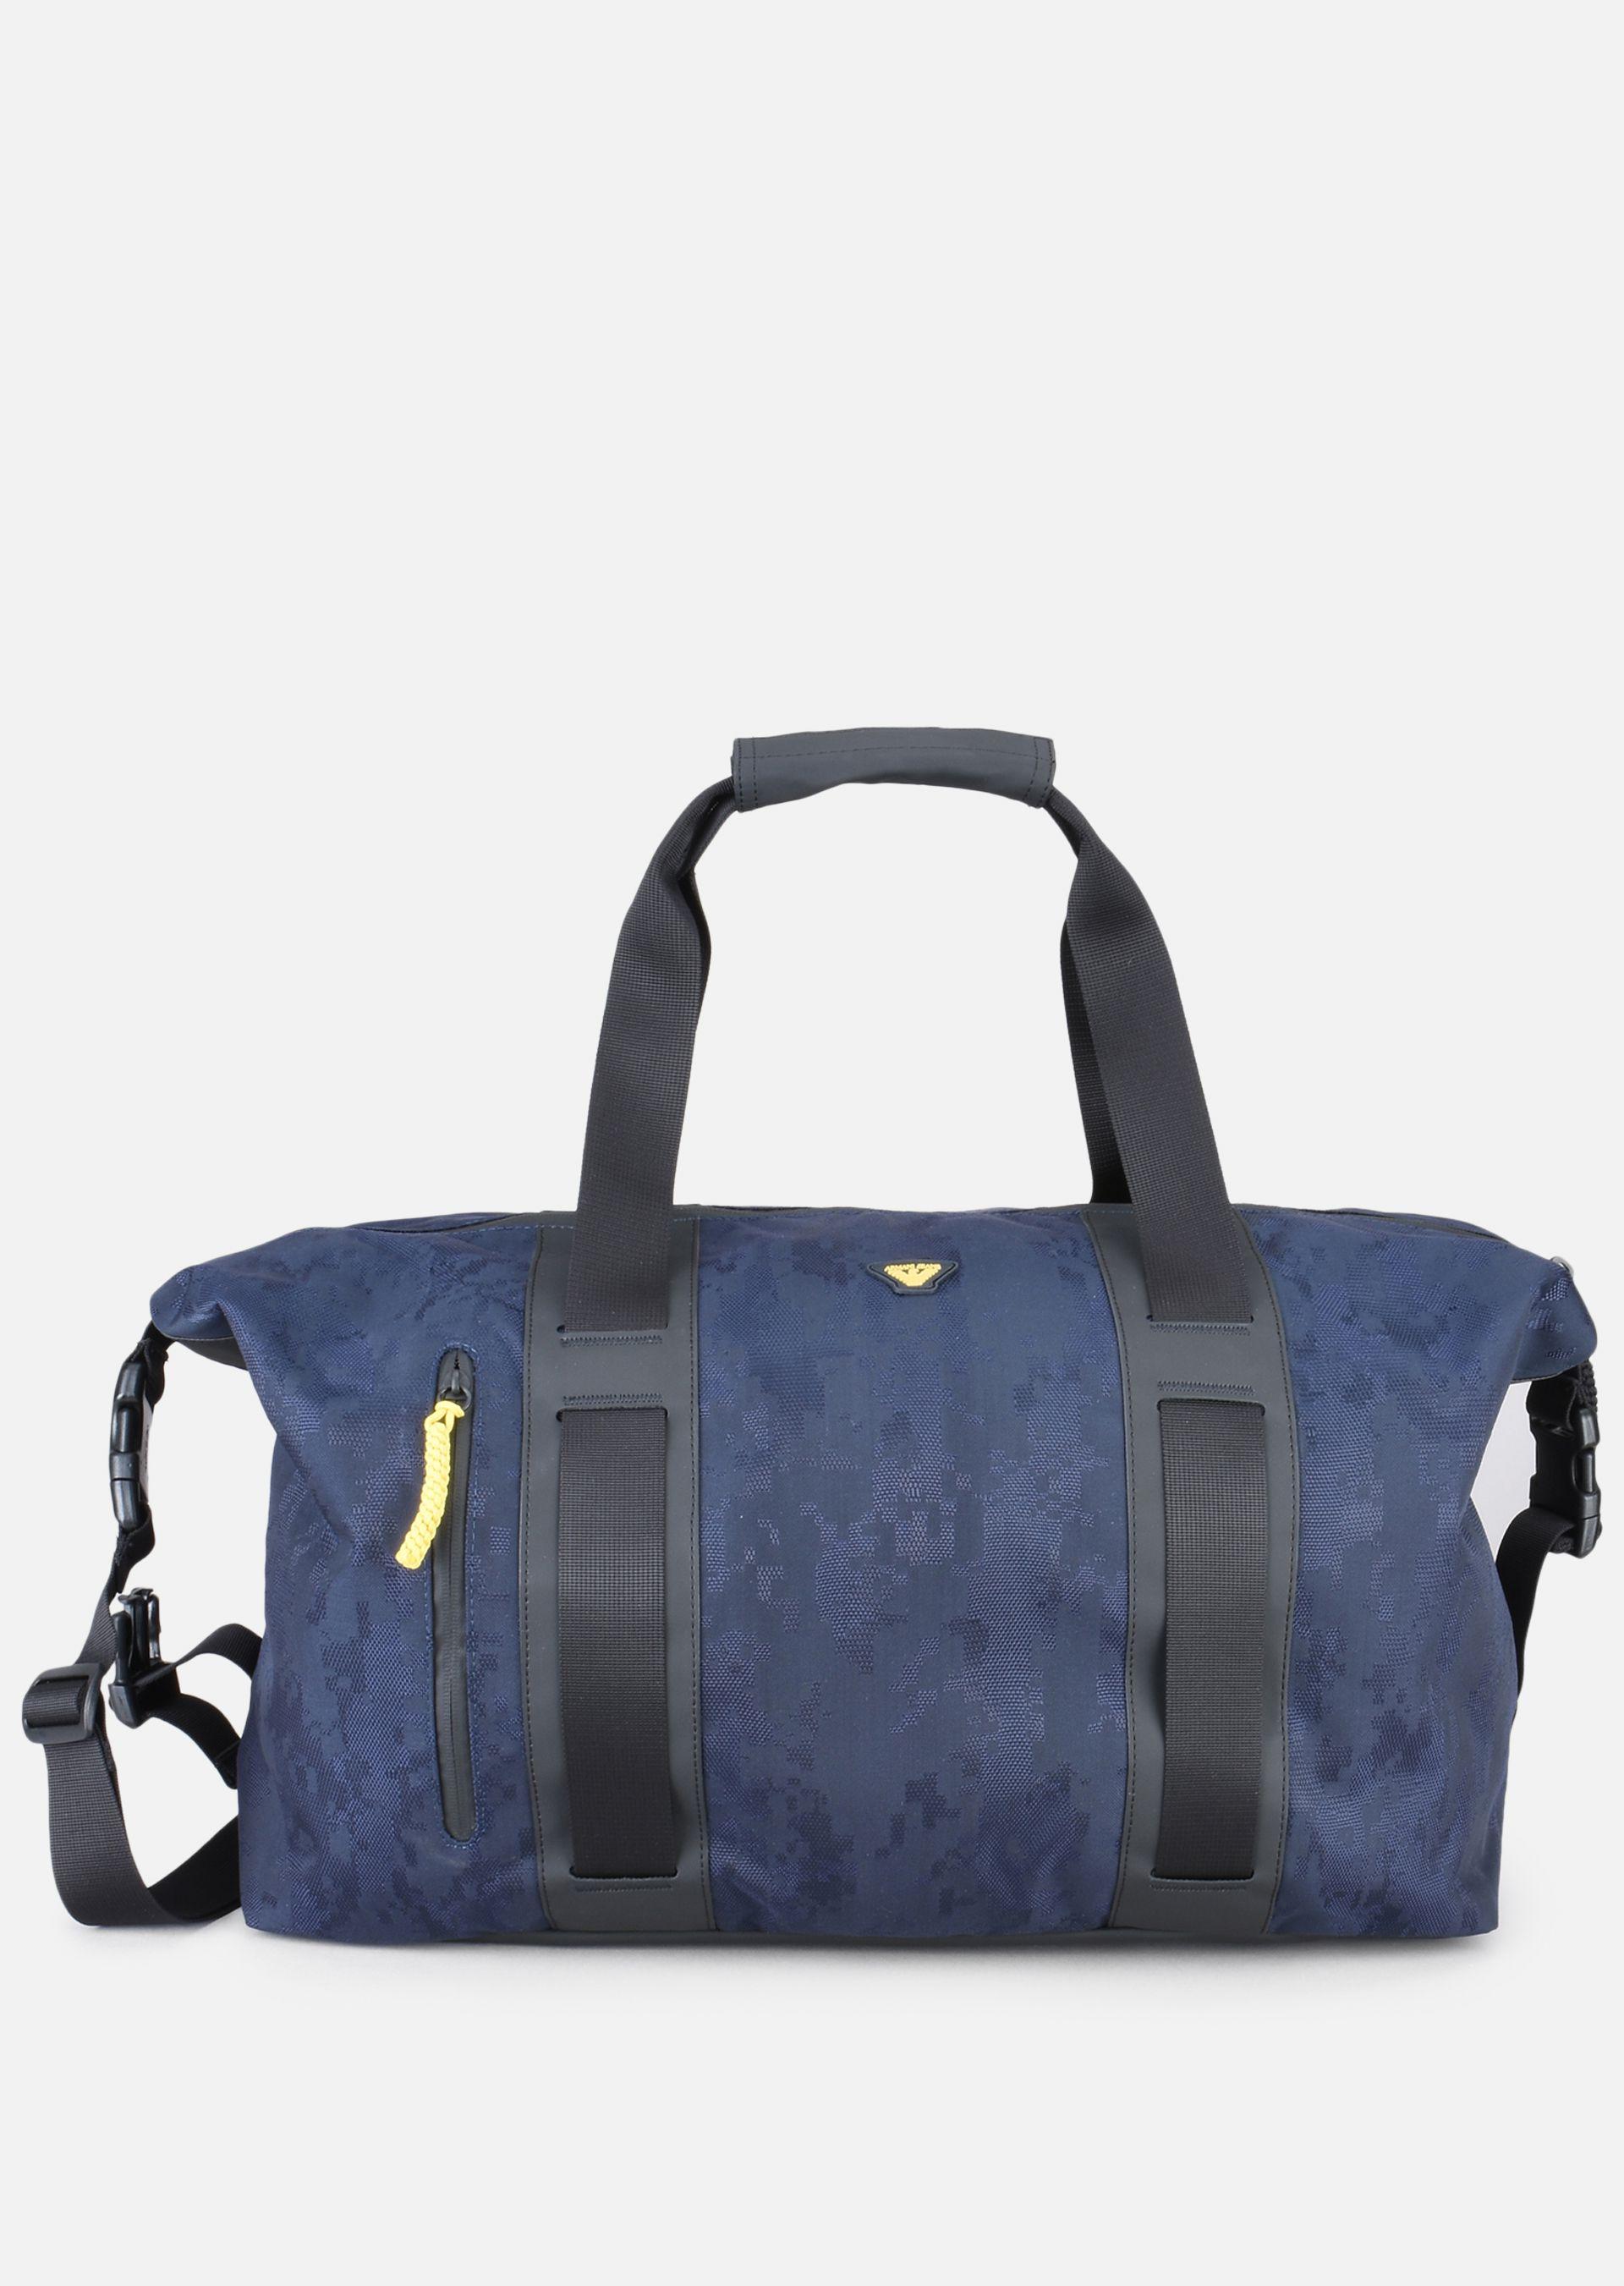 armani travel bag